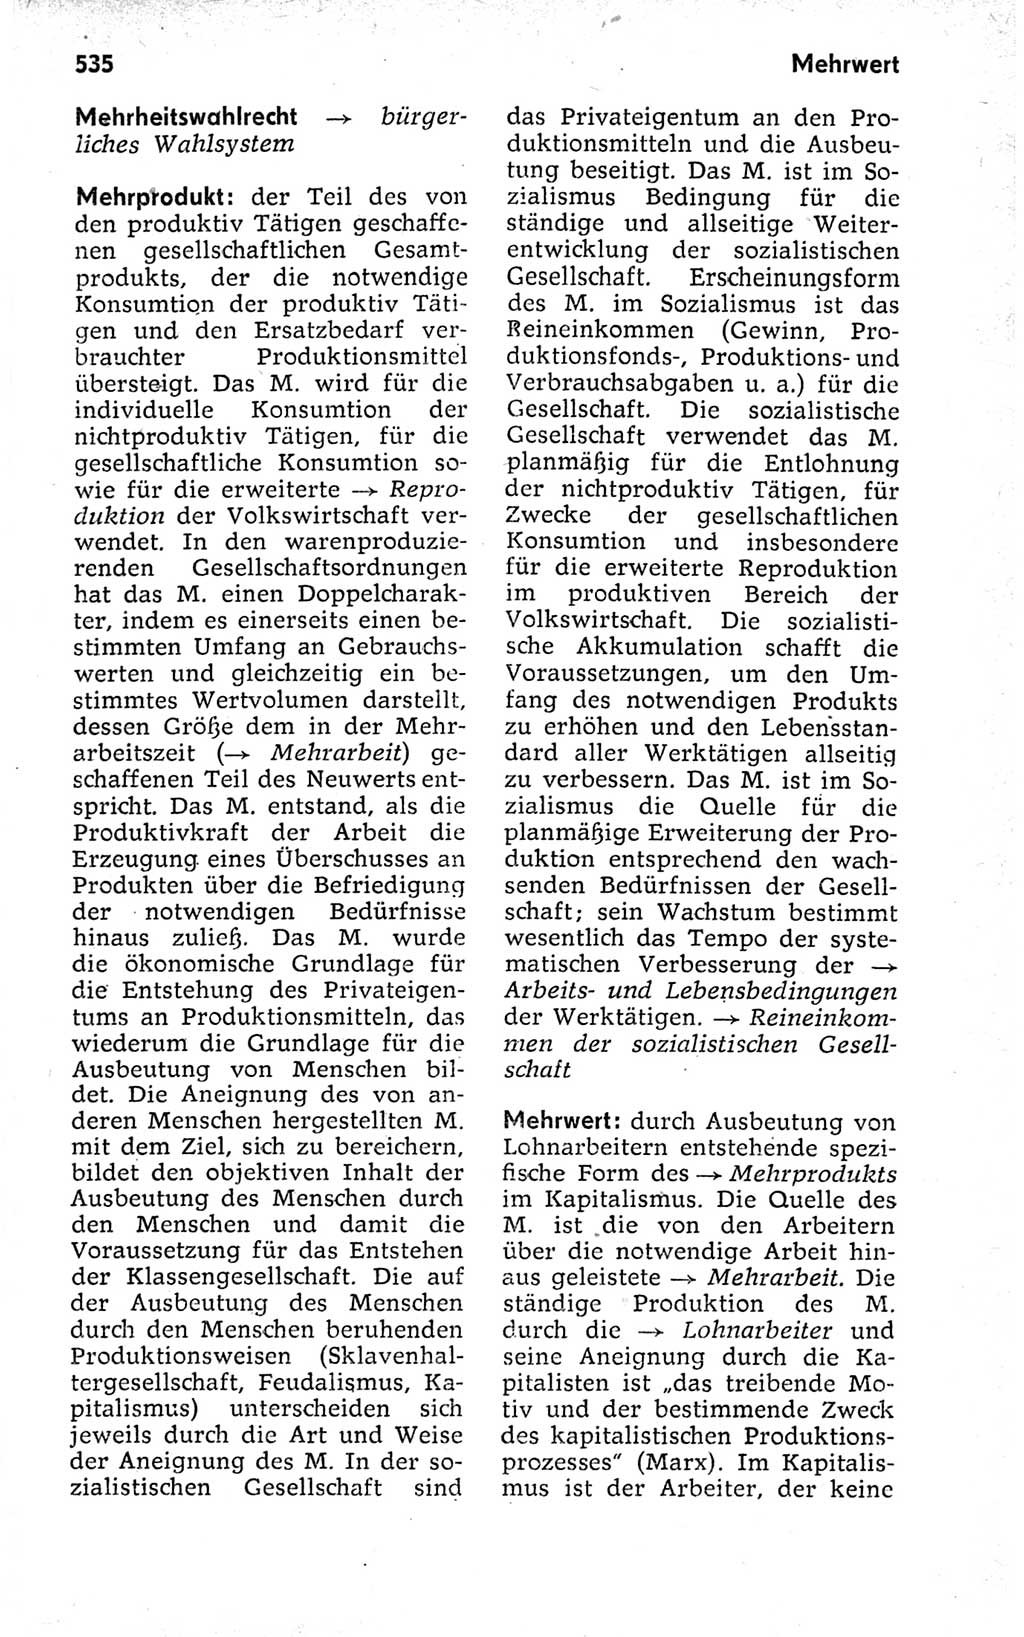 Kleines politisches Wörterbuch [Deutsche Demokratische Republik (DDR)] 1973, Seite 535 (Kl. pol. Wb. DDR 1973, S. 535)